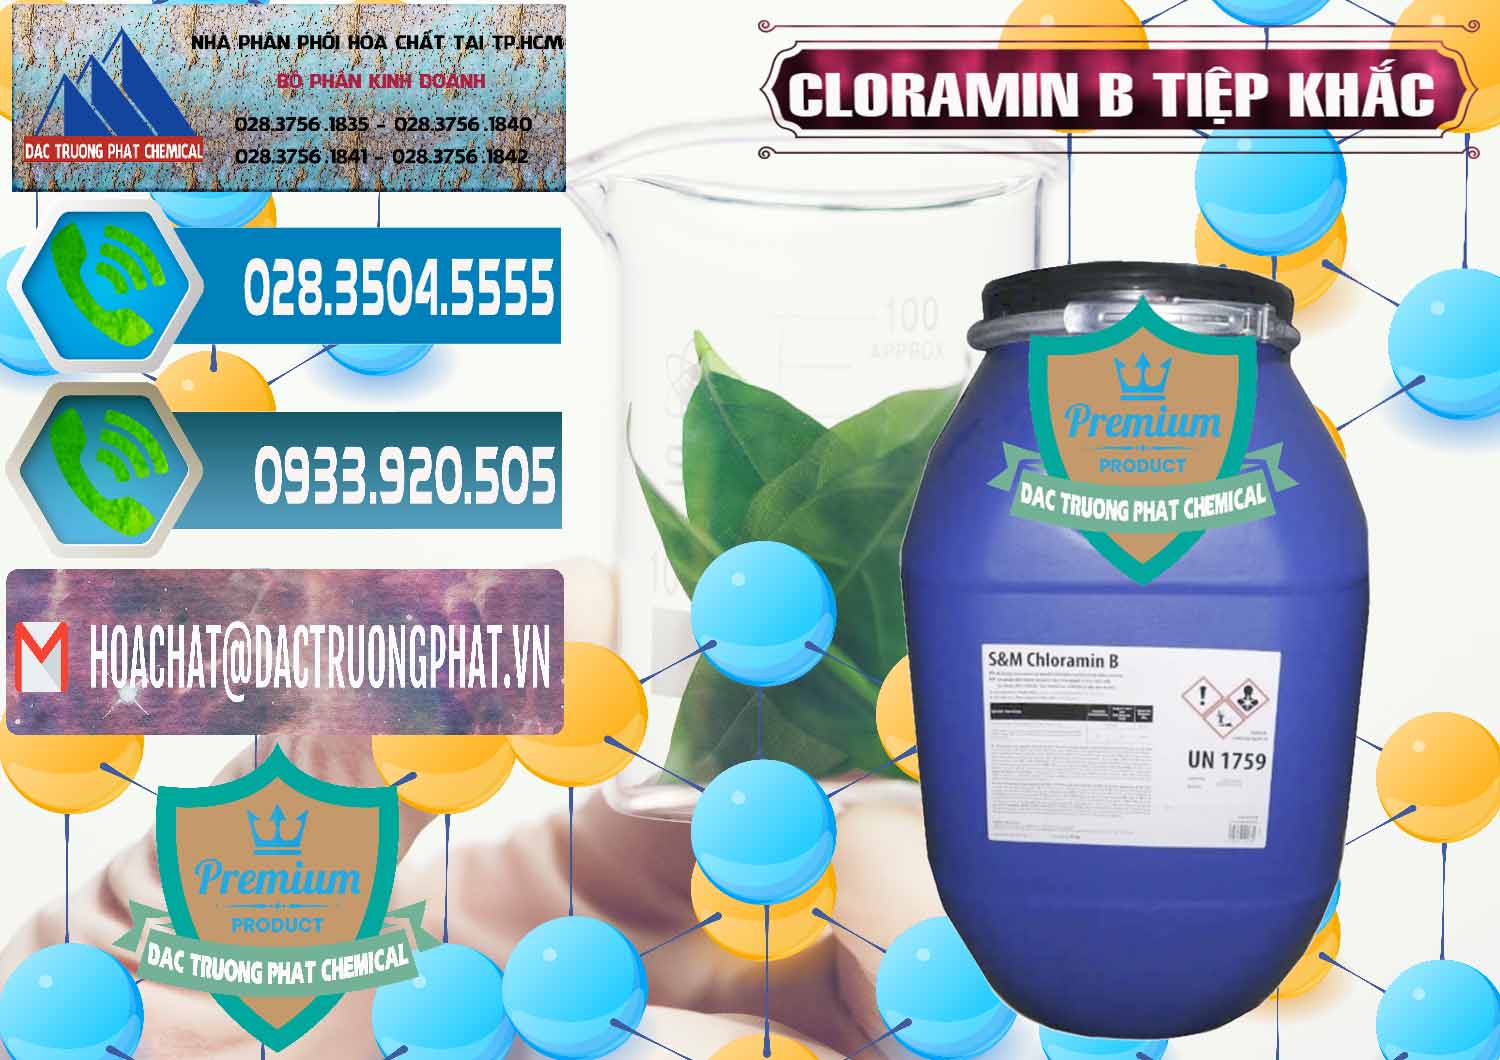 Cty bán và cung ứng Cloramin B Cộng Hòa Séc Tiệp Khắc Czech Republic - 0299 - Nơi cung cấp & phân phối hóa chất tại TP.HCM - congtyhoachat.net